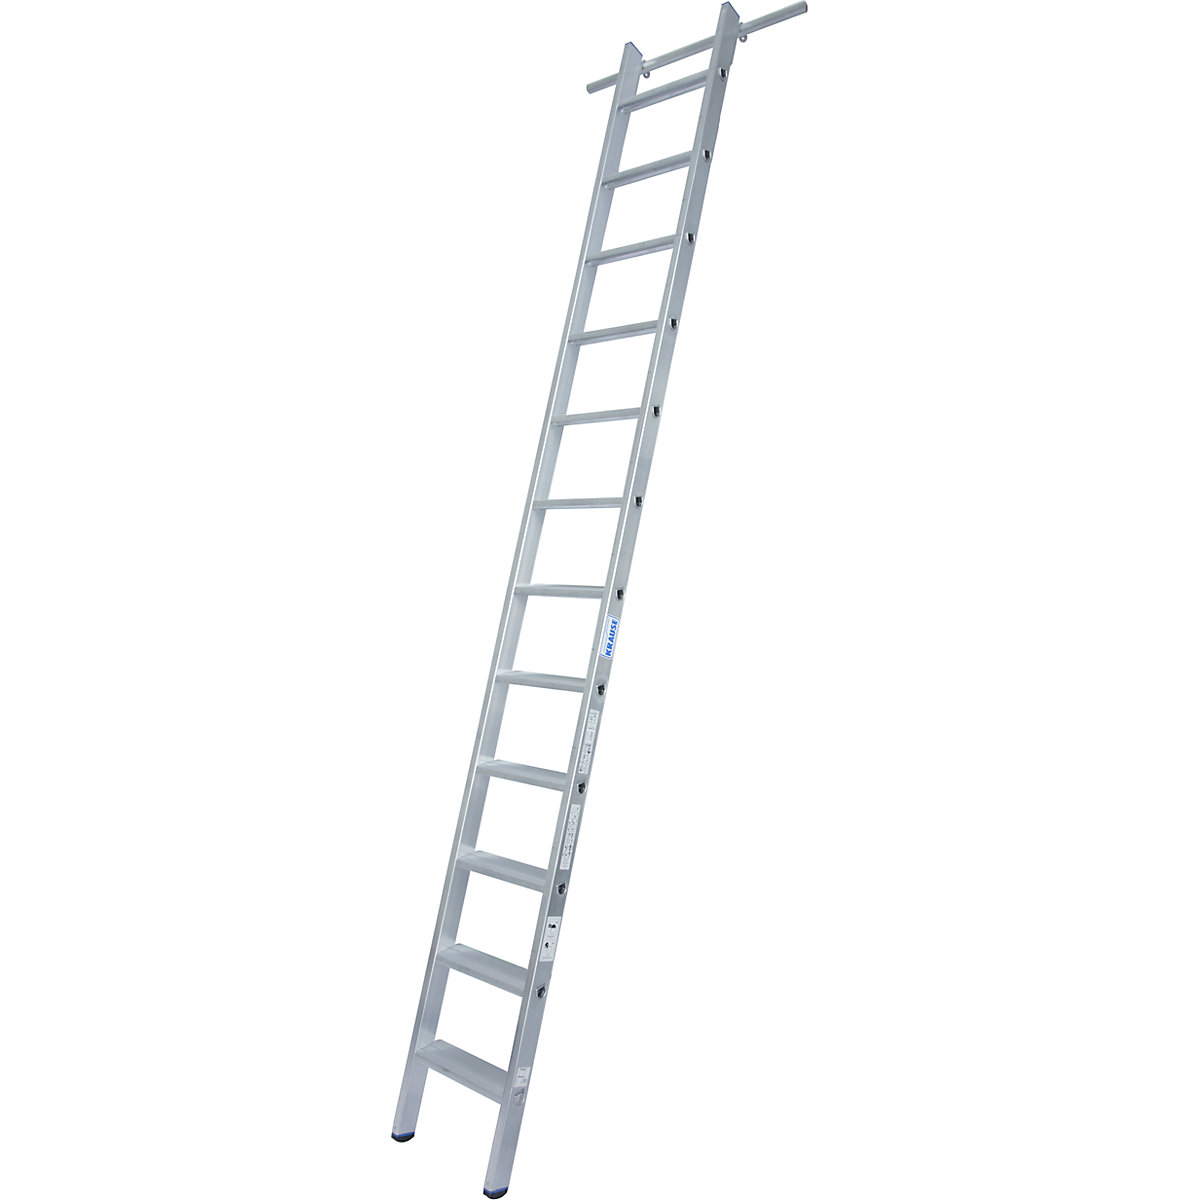 KRAUSE Stufen-Regalleiter, einhängbar, 1 Paar Einhängehaken, 12 Stufen